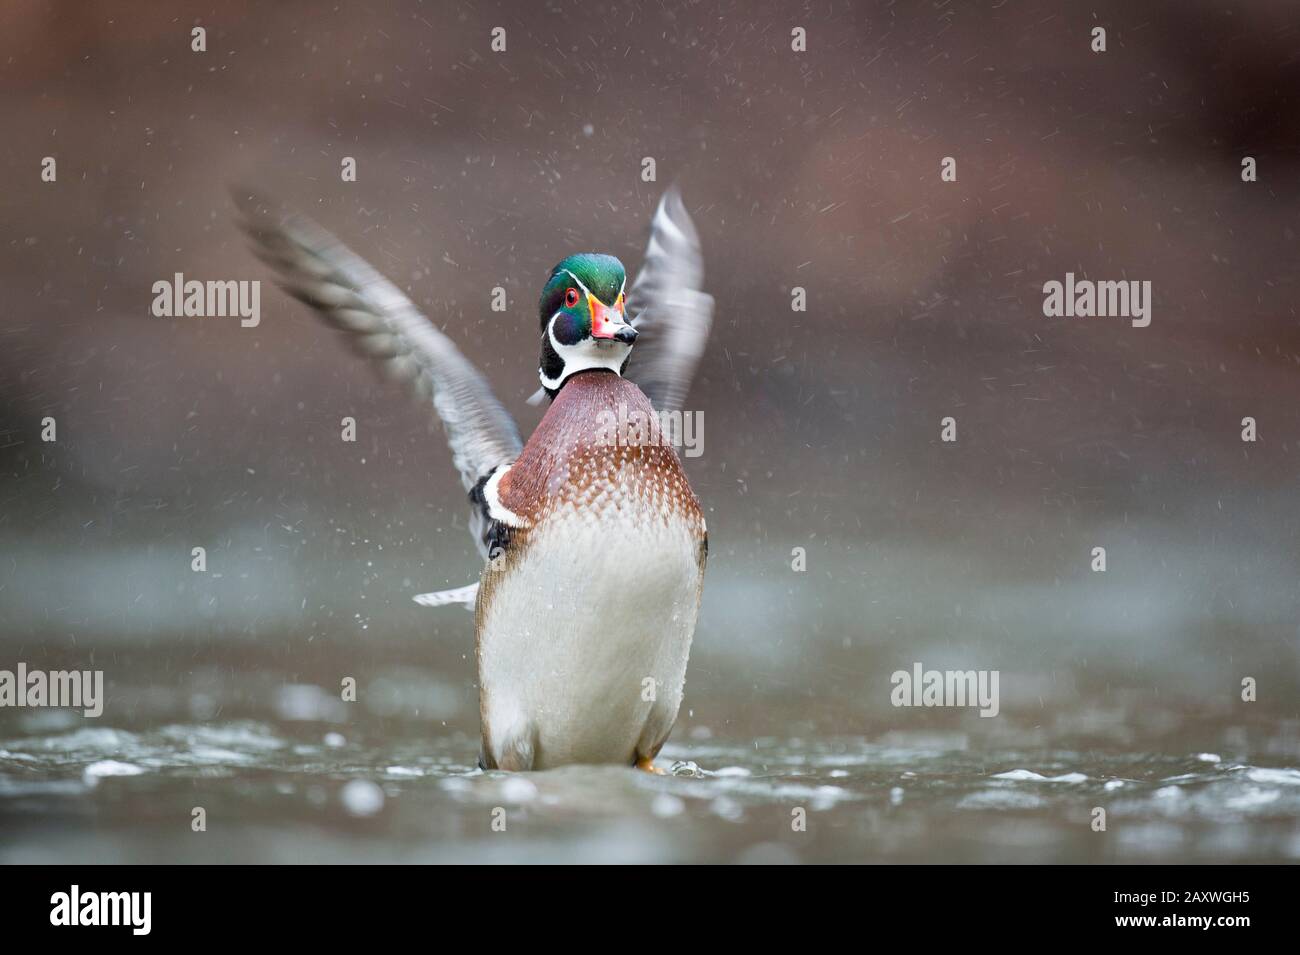 Ein bunter, männlicher Holz-Duck flapt seine Flügel, während er in flachem Wasser an einem übergiebelten Tag in weichem Licht ansteht. Stockfoto